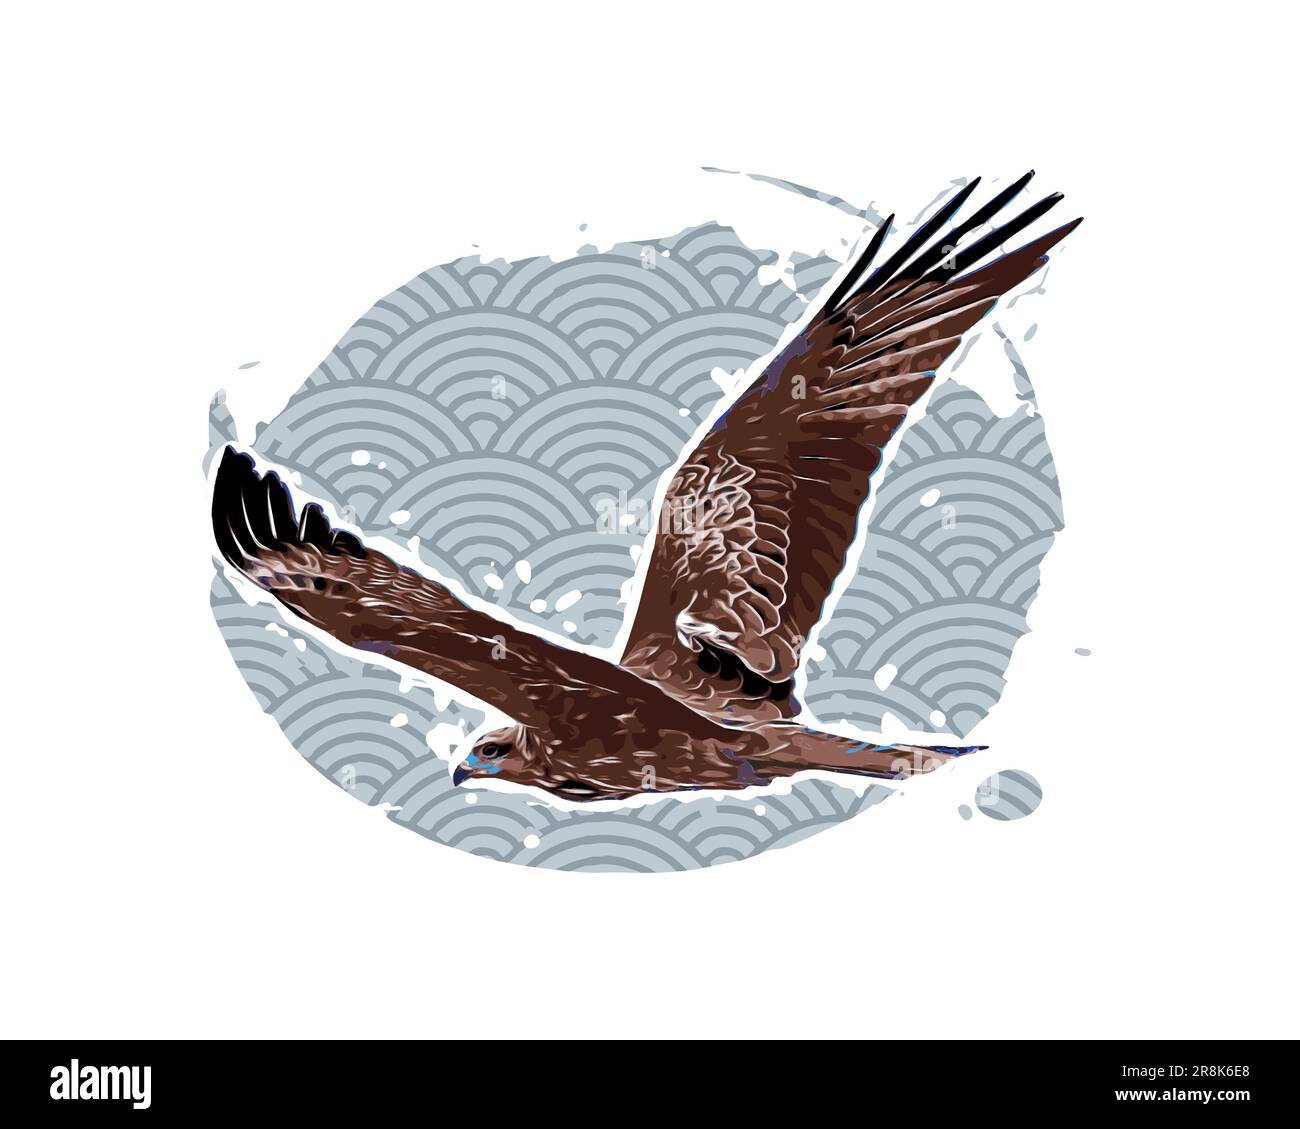 Aquila in volo nel cielo, vintage vettoriale illustrazione, fumetto baground Illustrazione Vettoriale